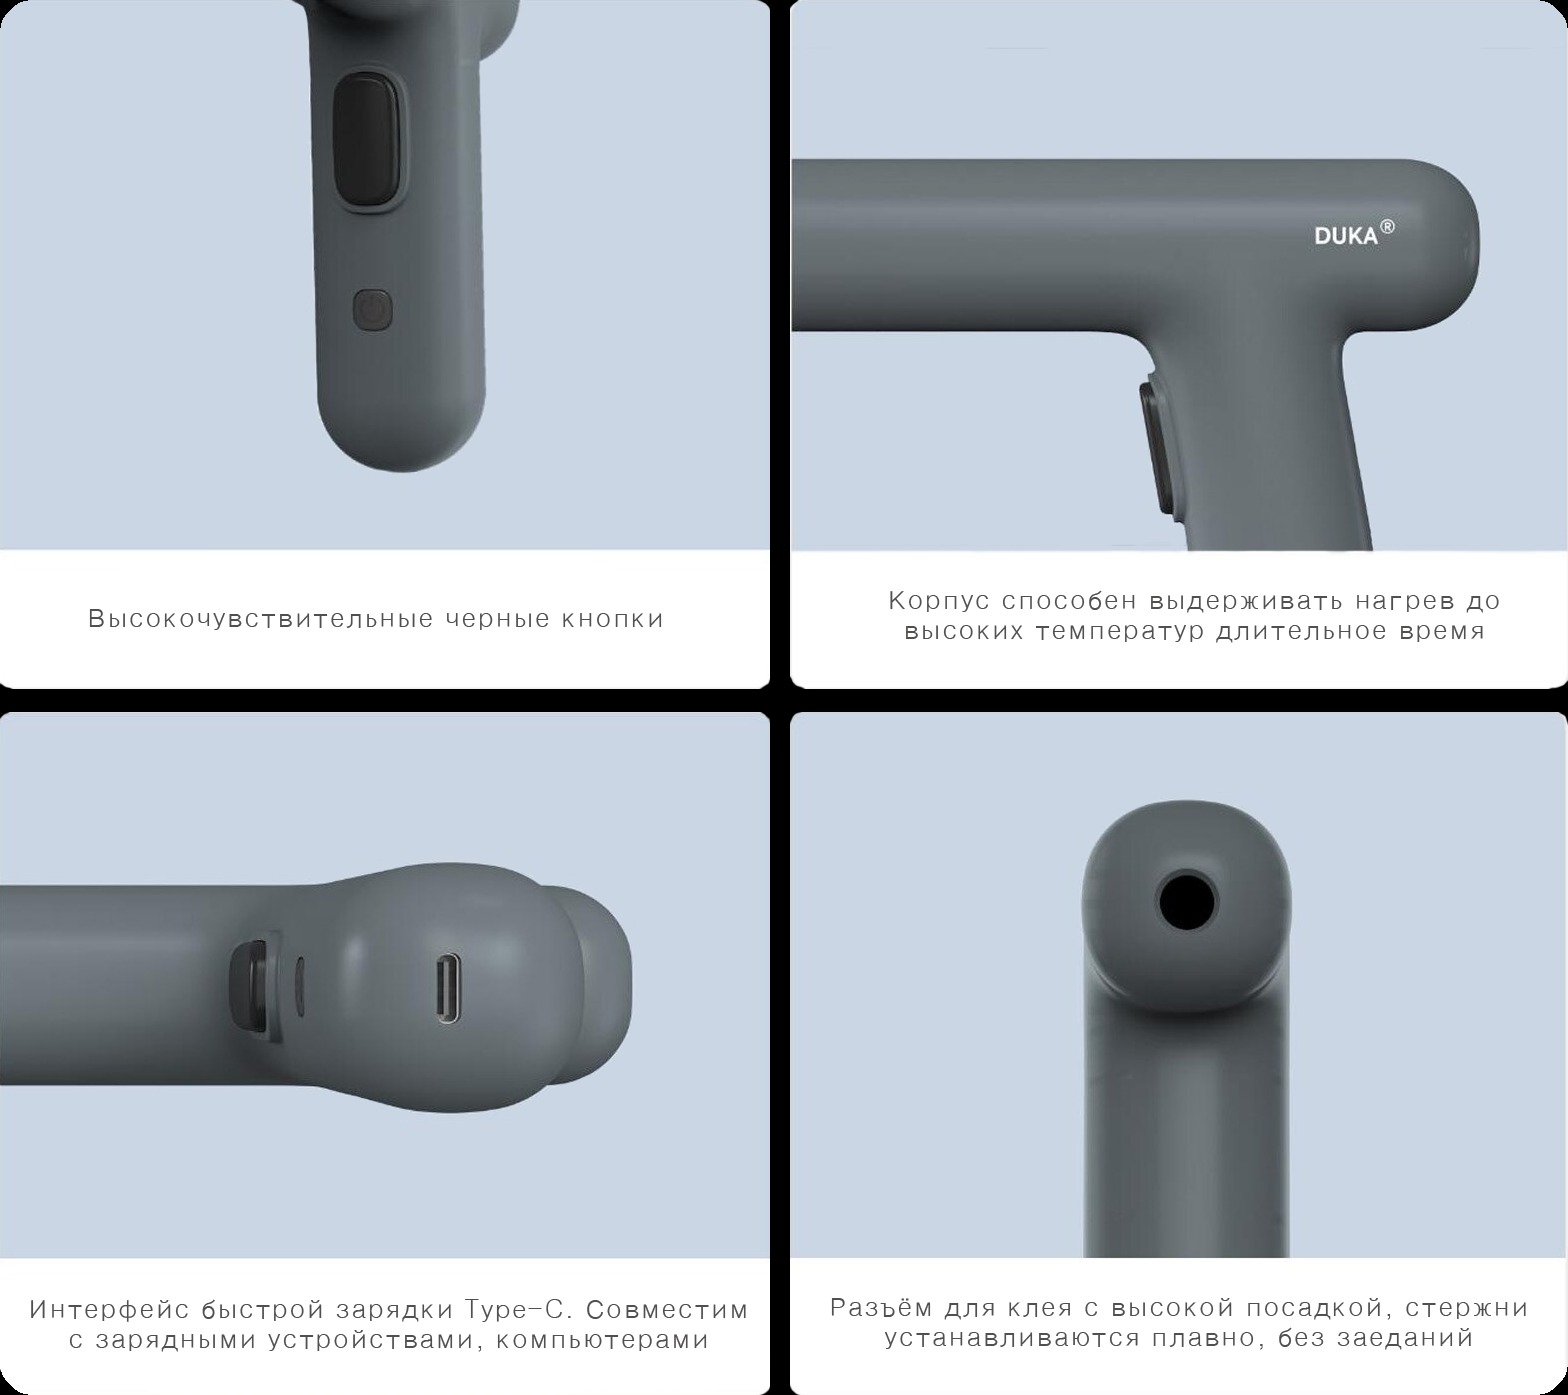 Аккумуляторный клеевой пистолет Xiaomi Duka